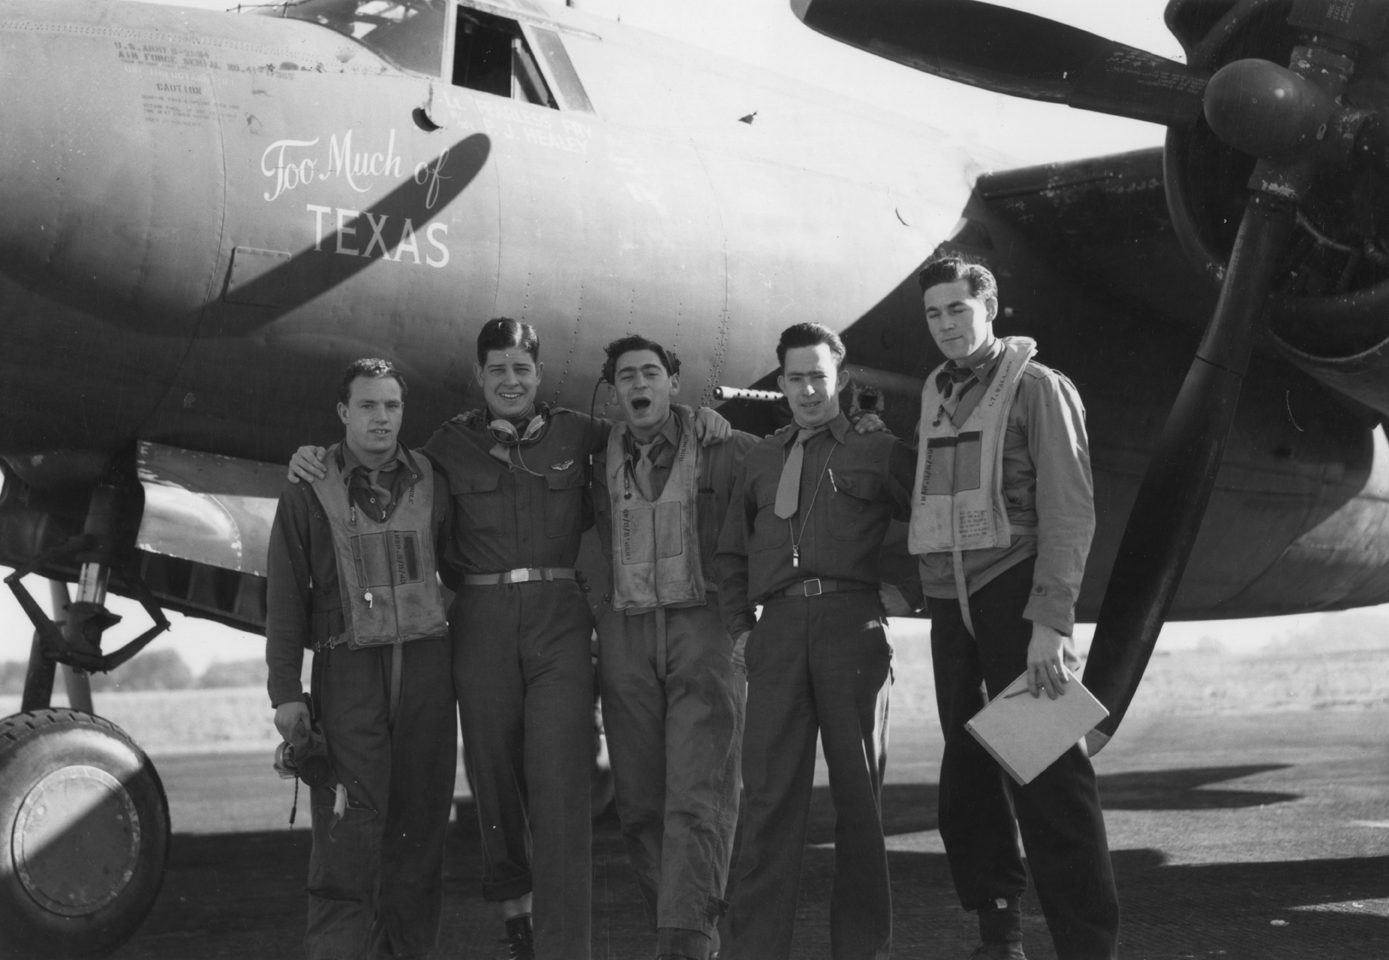 41 17985 B 26B Marauder 9AF 322BG Too Much of Texas with flight crew England 14 May 1943 01